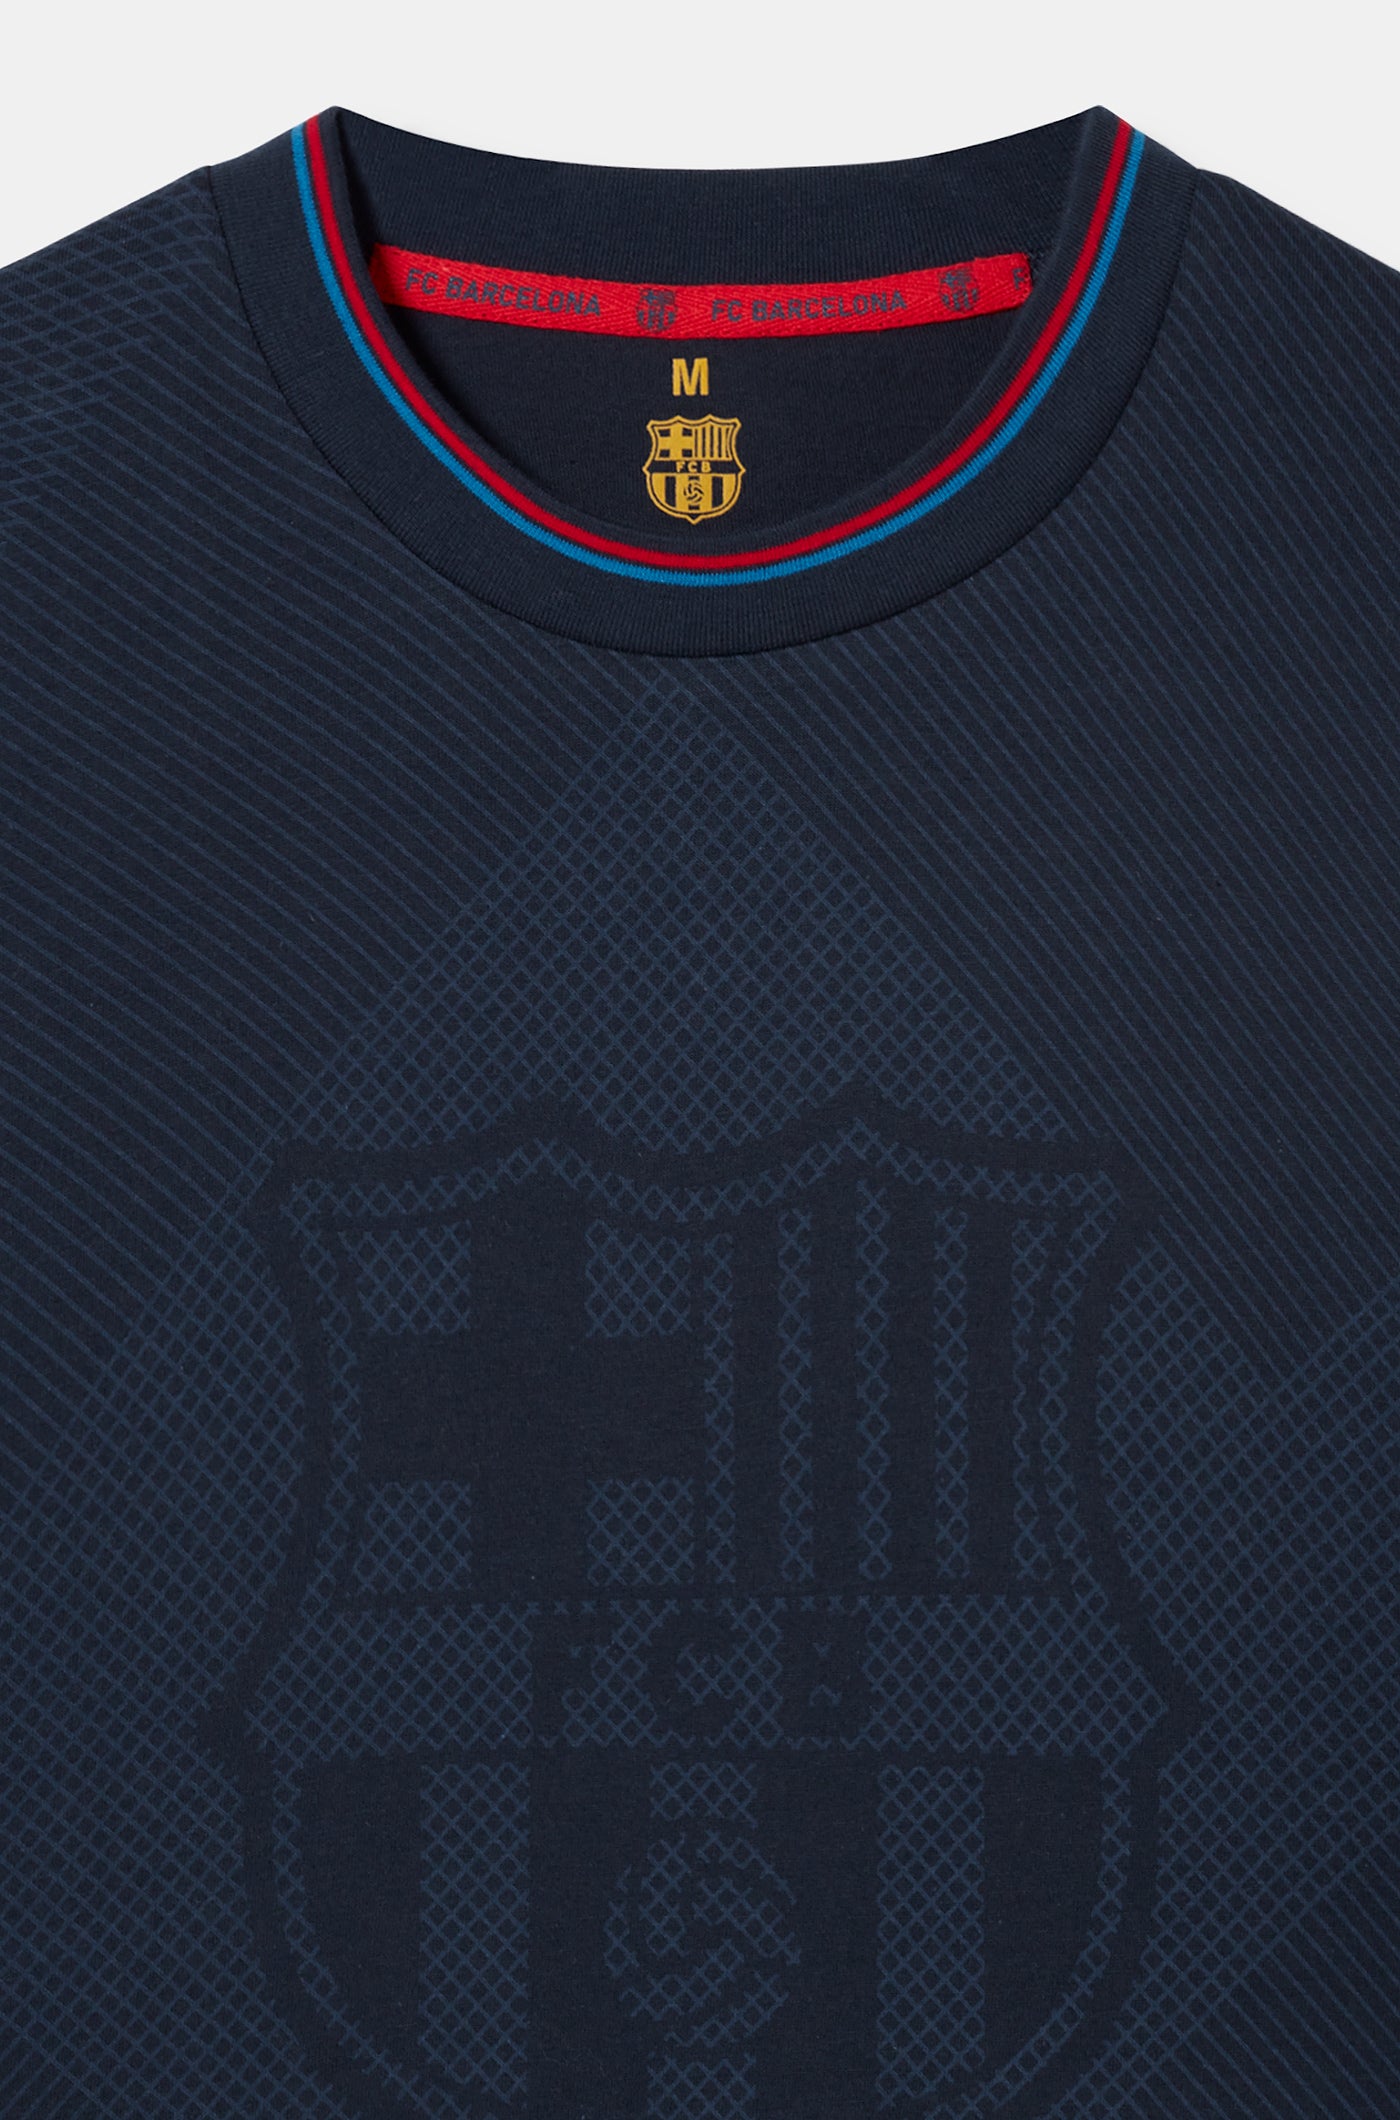 Pijama del FC Barcelona con escudo azul marino